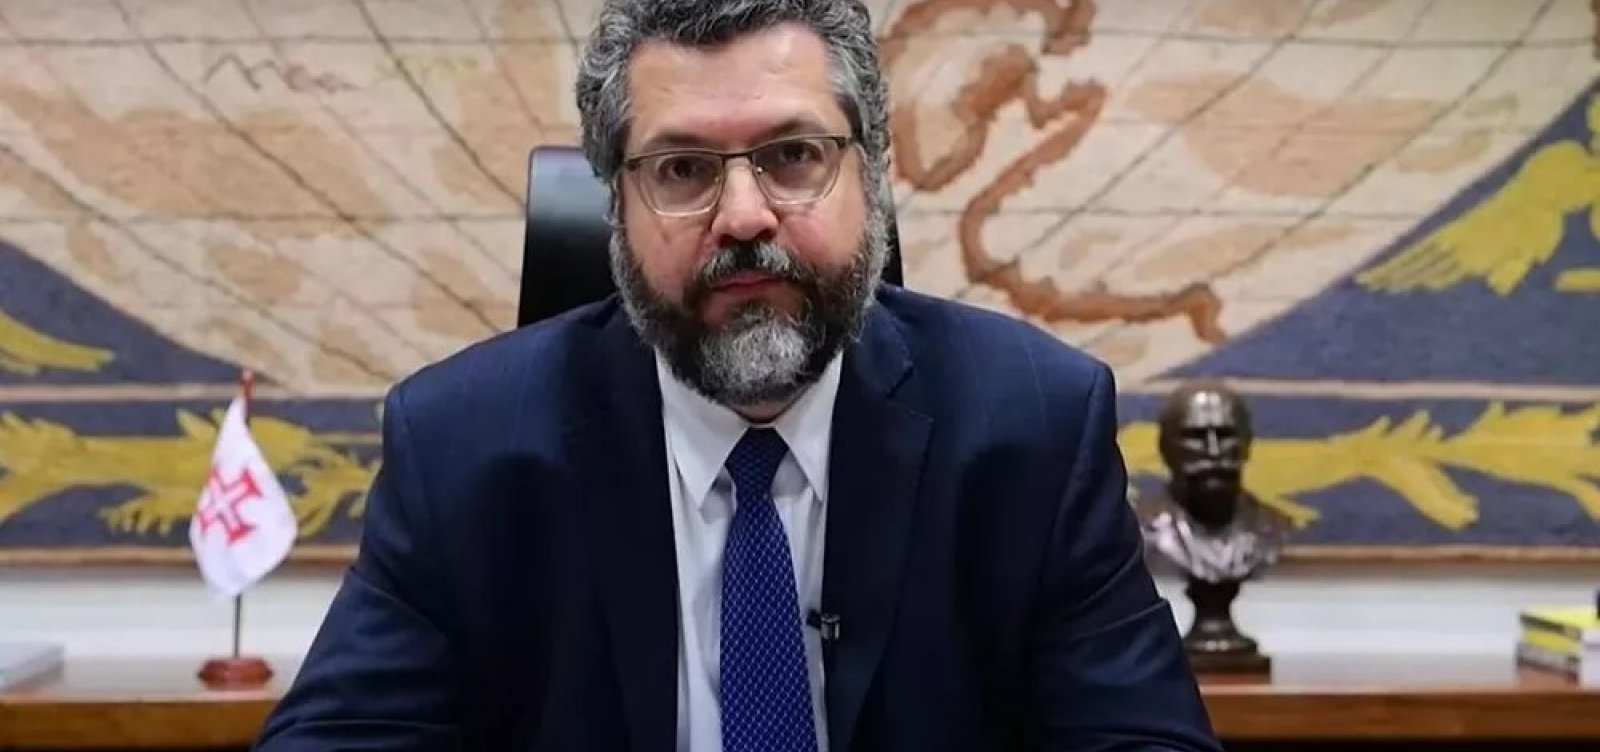 Em discurso na ONU, Araújo defende 'esforços de nações individuais' contra Covid-19